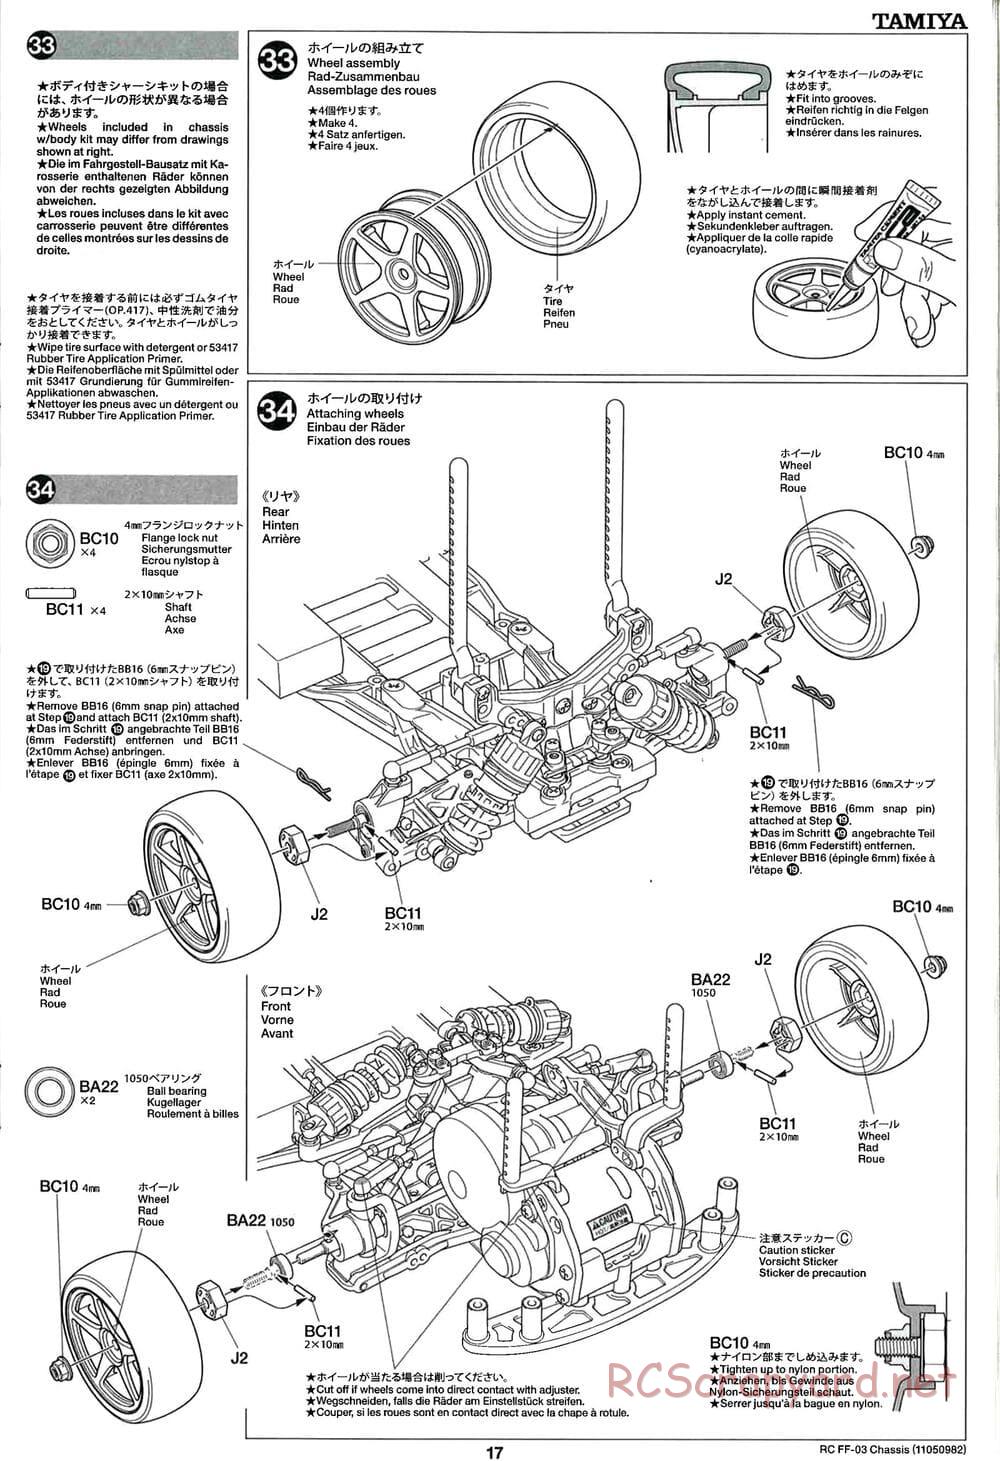 Tamiya - Honda Accord Aero Custom - FF-03 Chassis - Manual - Page 17